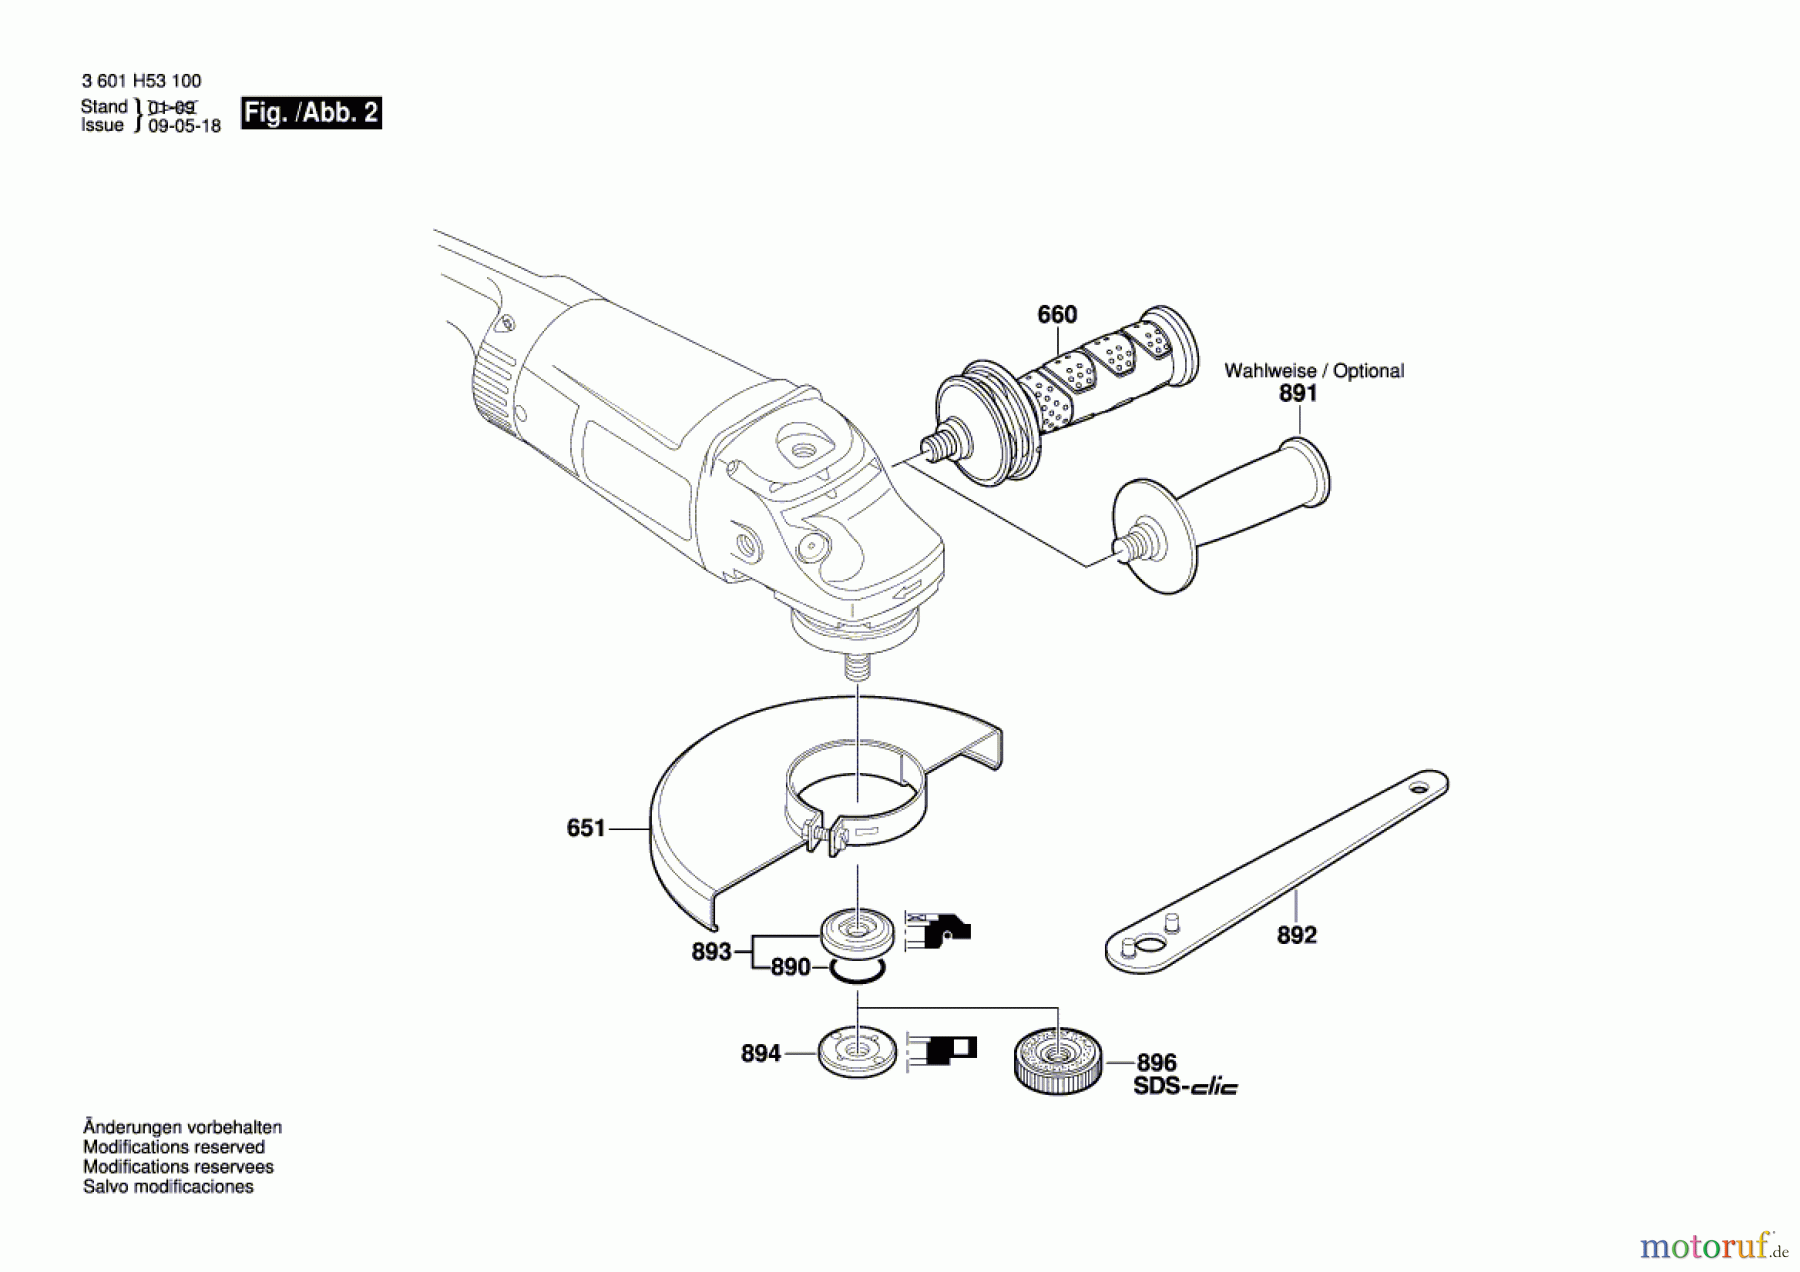  Bosch Werkzeug Winkelschleifer GWS 26-180 H Seite 2